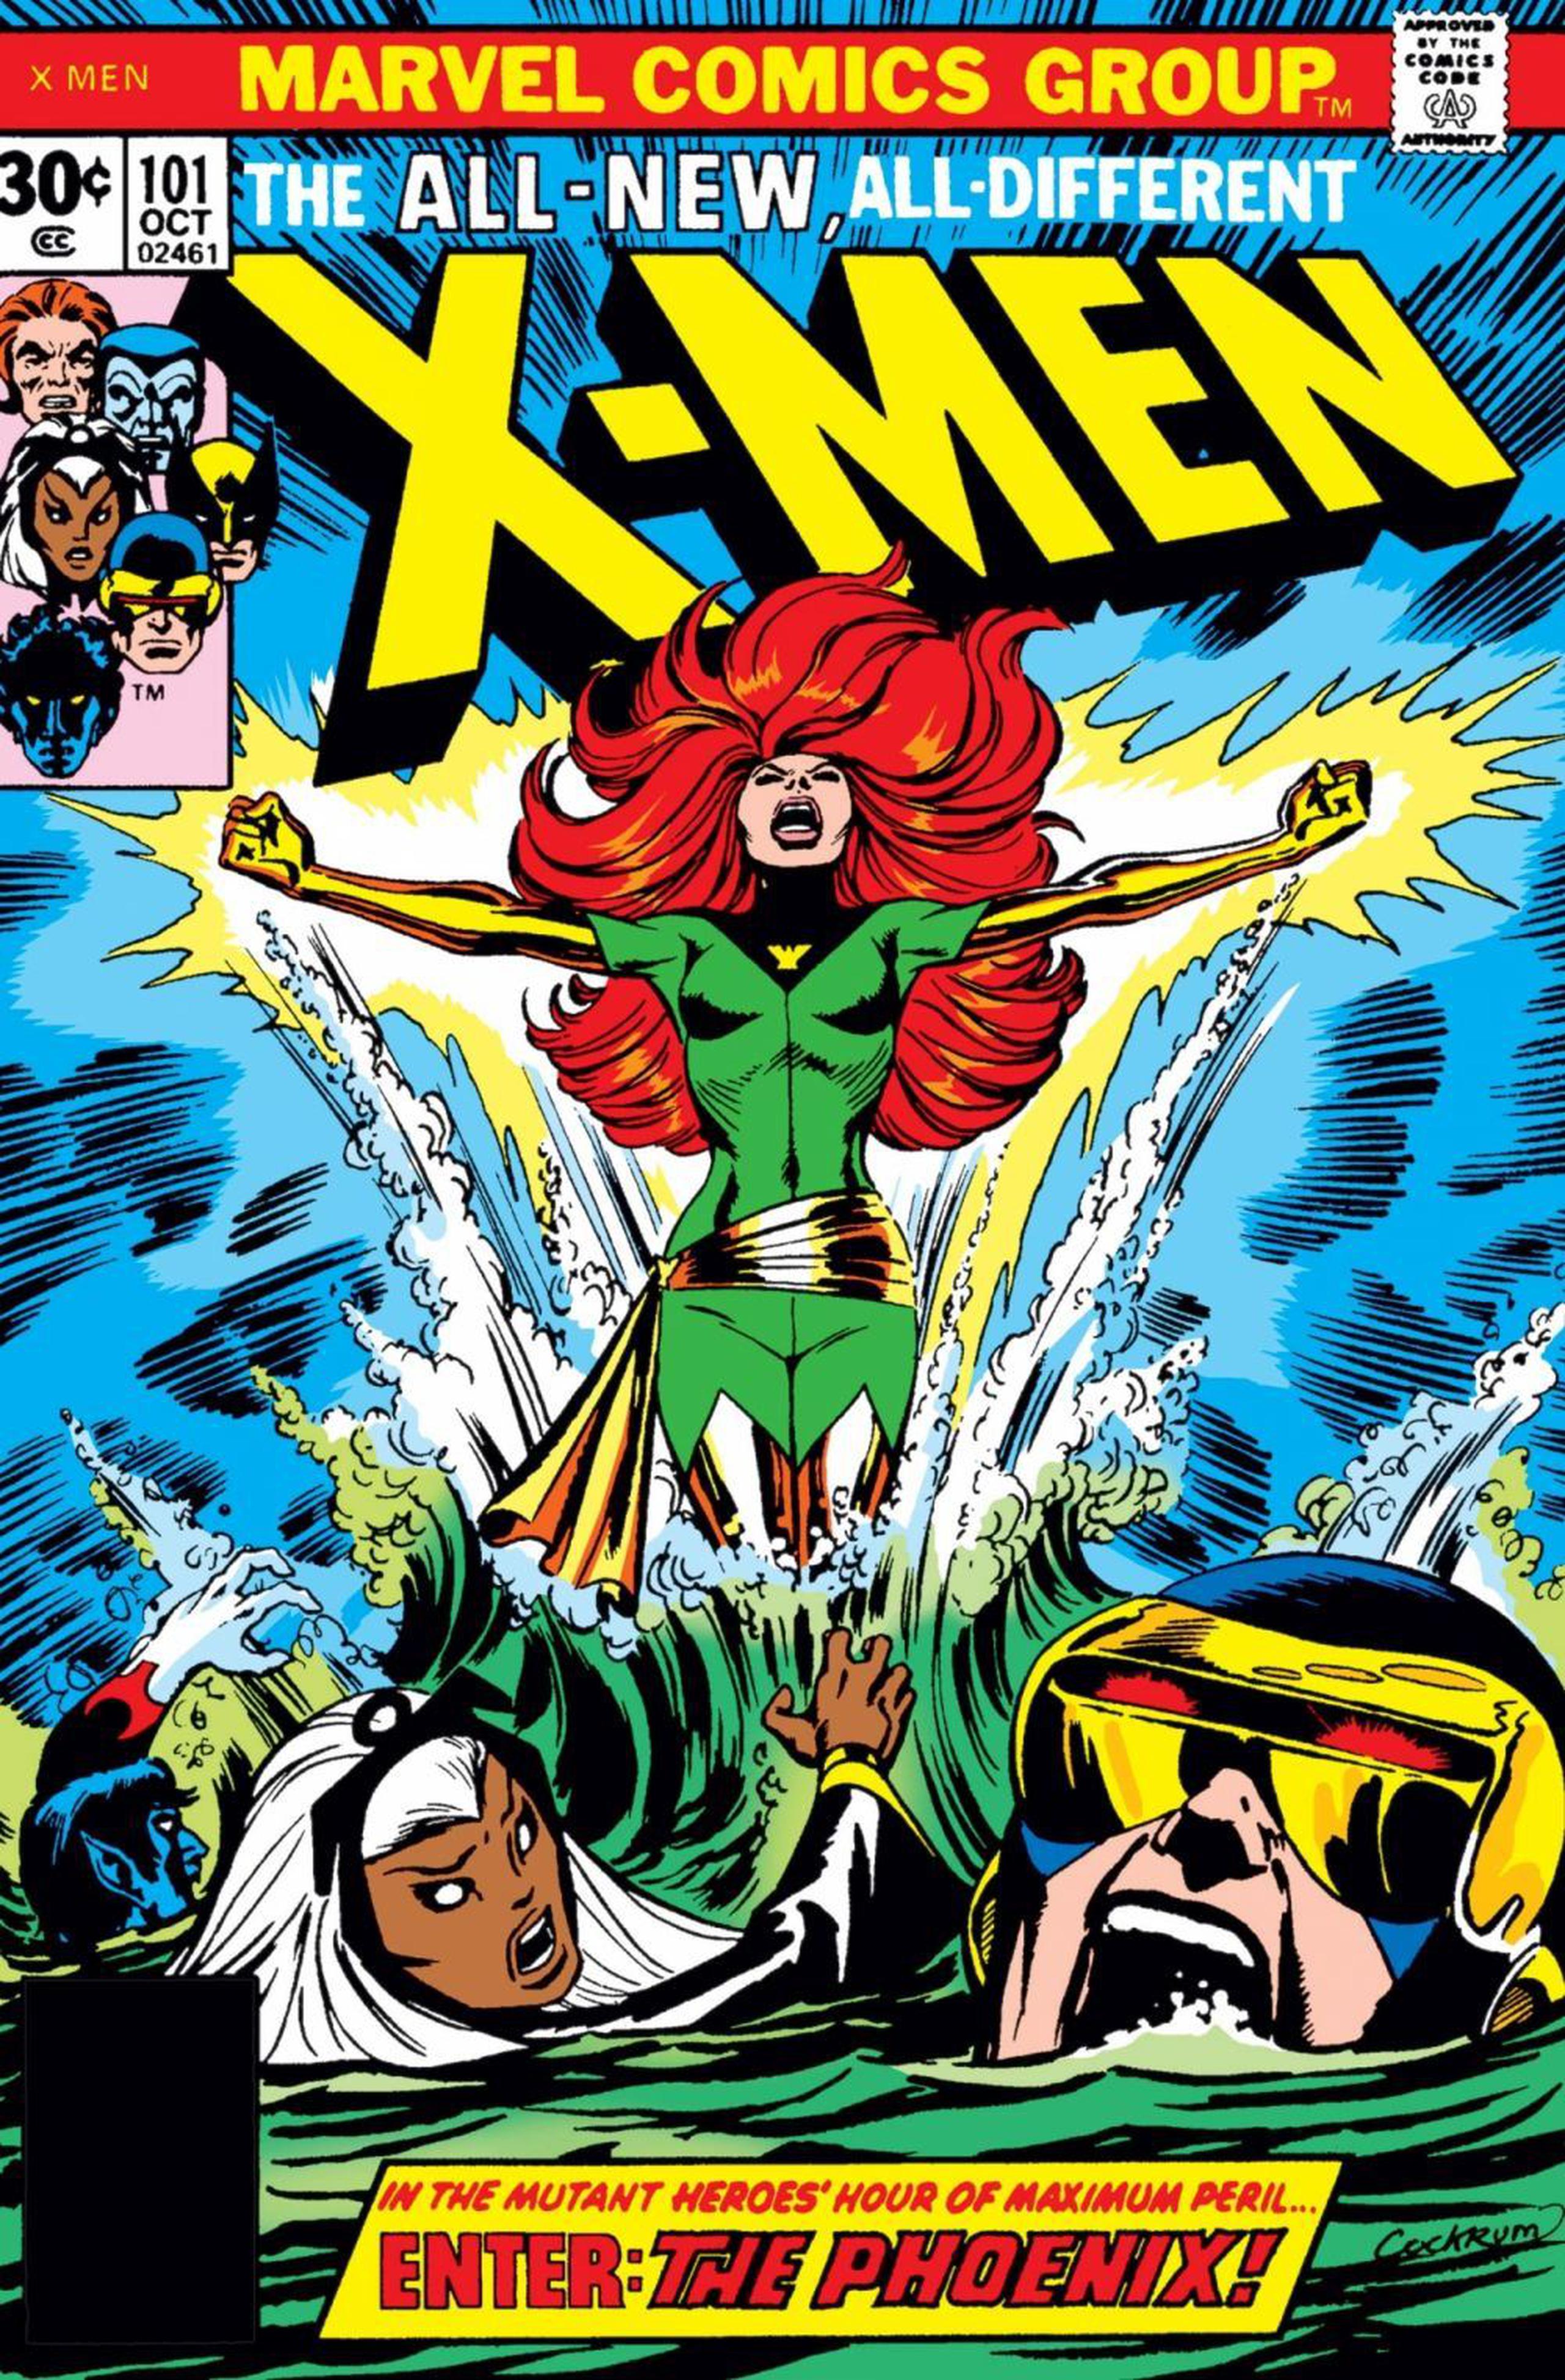 El Fénix extendió sus alas por primera vez en 1976, en el número 101 de “Uncanny X-Men”, con guion de Cris Clearmont y pincel de Dave Cockrum. (Captura)